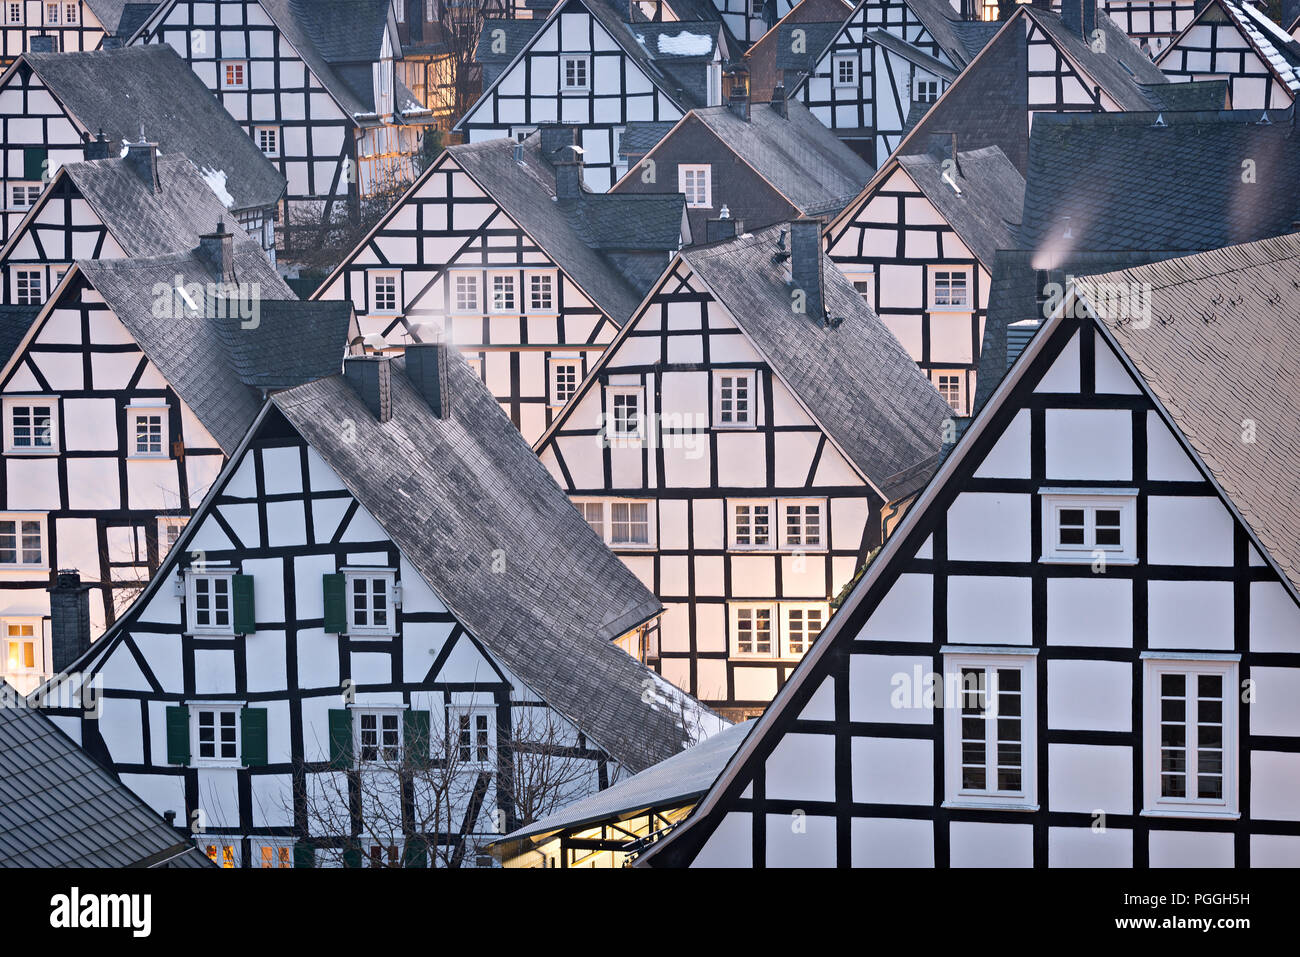 Mittelalterliche Architektur in Fachwerkhäuser in den Farben schwarz und weiß in alter Flecken, das Zentrum von Freudenberg, Deutschland. Stockfoto